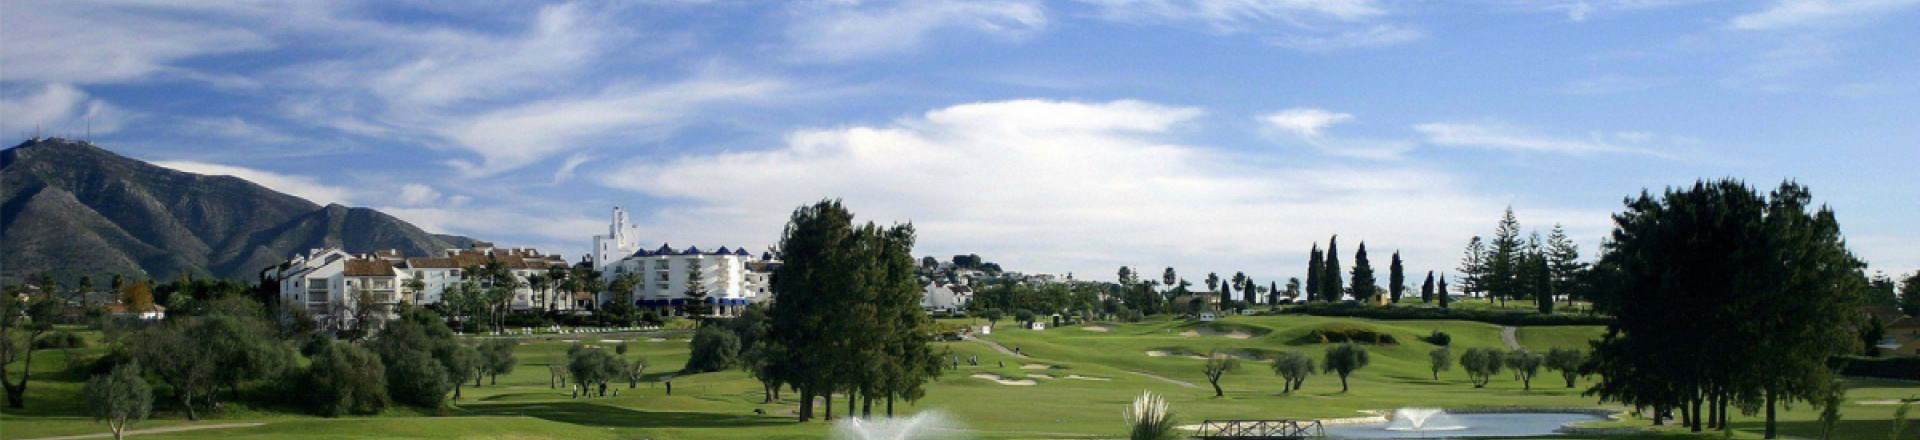 Mijas Los Olivos Golf Course